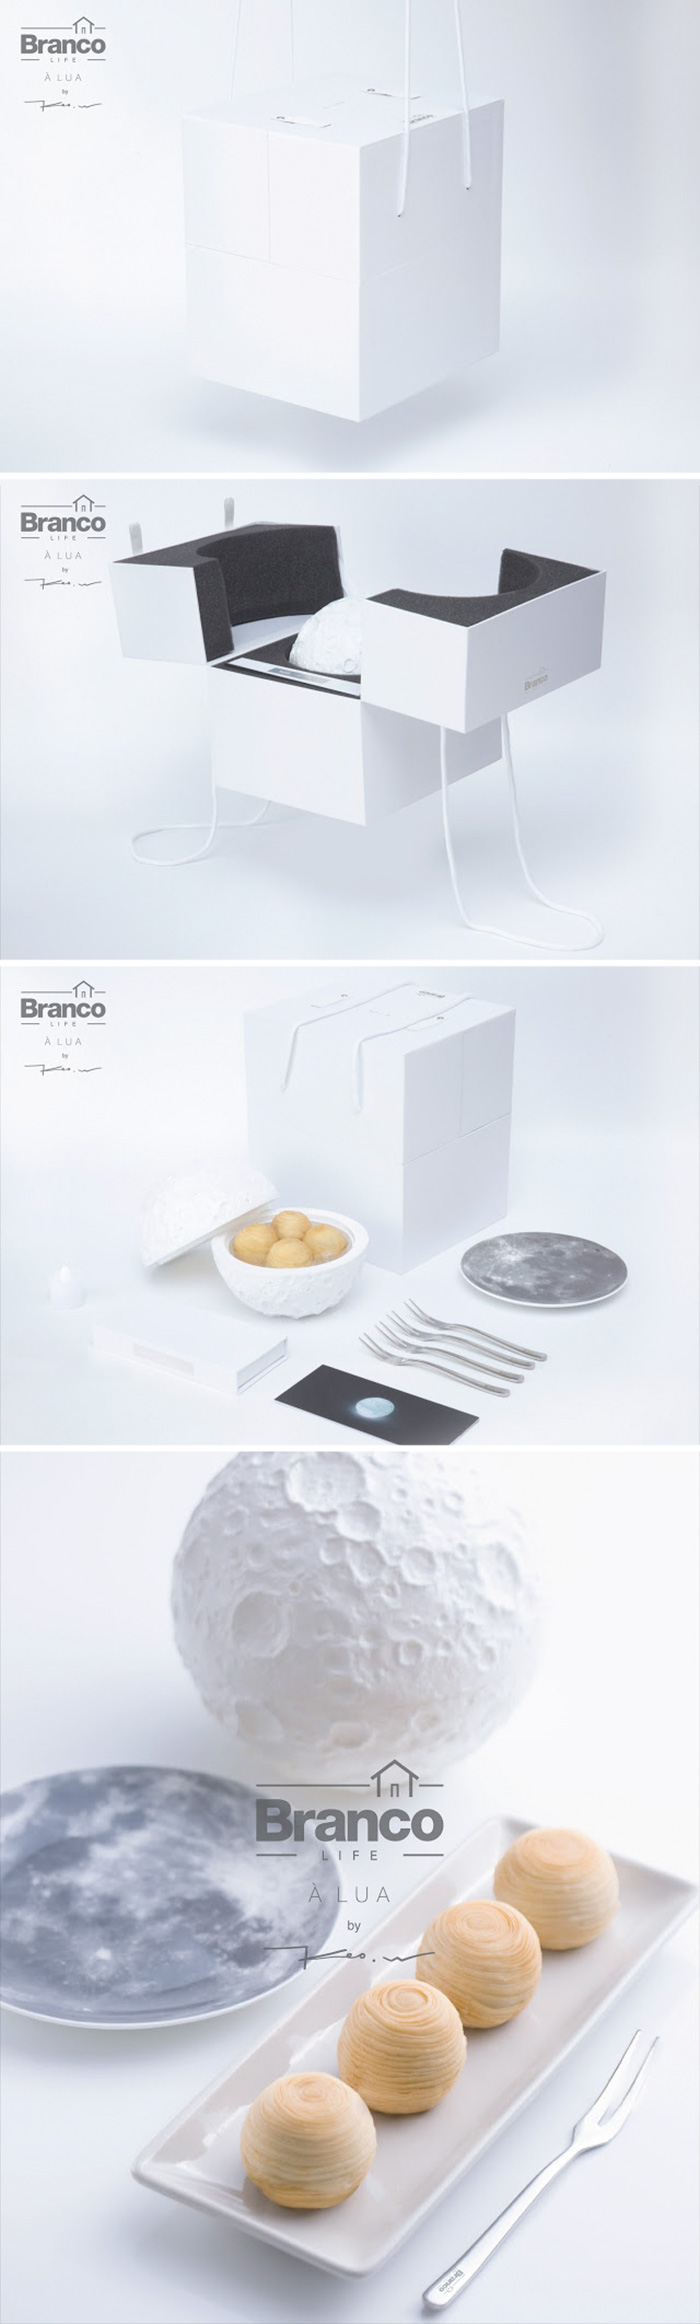 Creative Food Packaging Ideas 25 59491bad01065  700 - As embalagens mais criativas da publicidade (Parte 1)